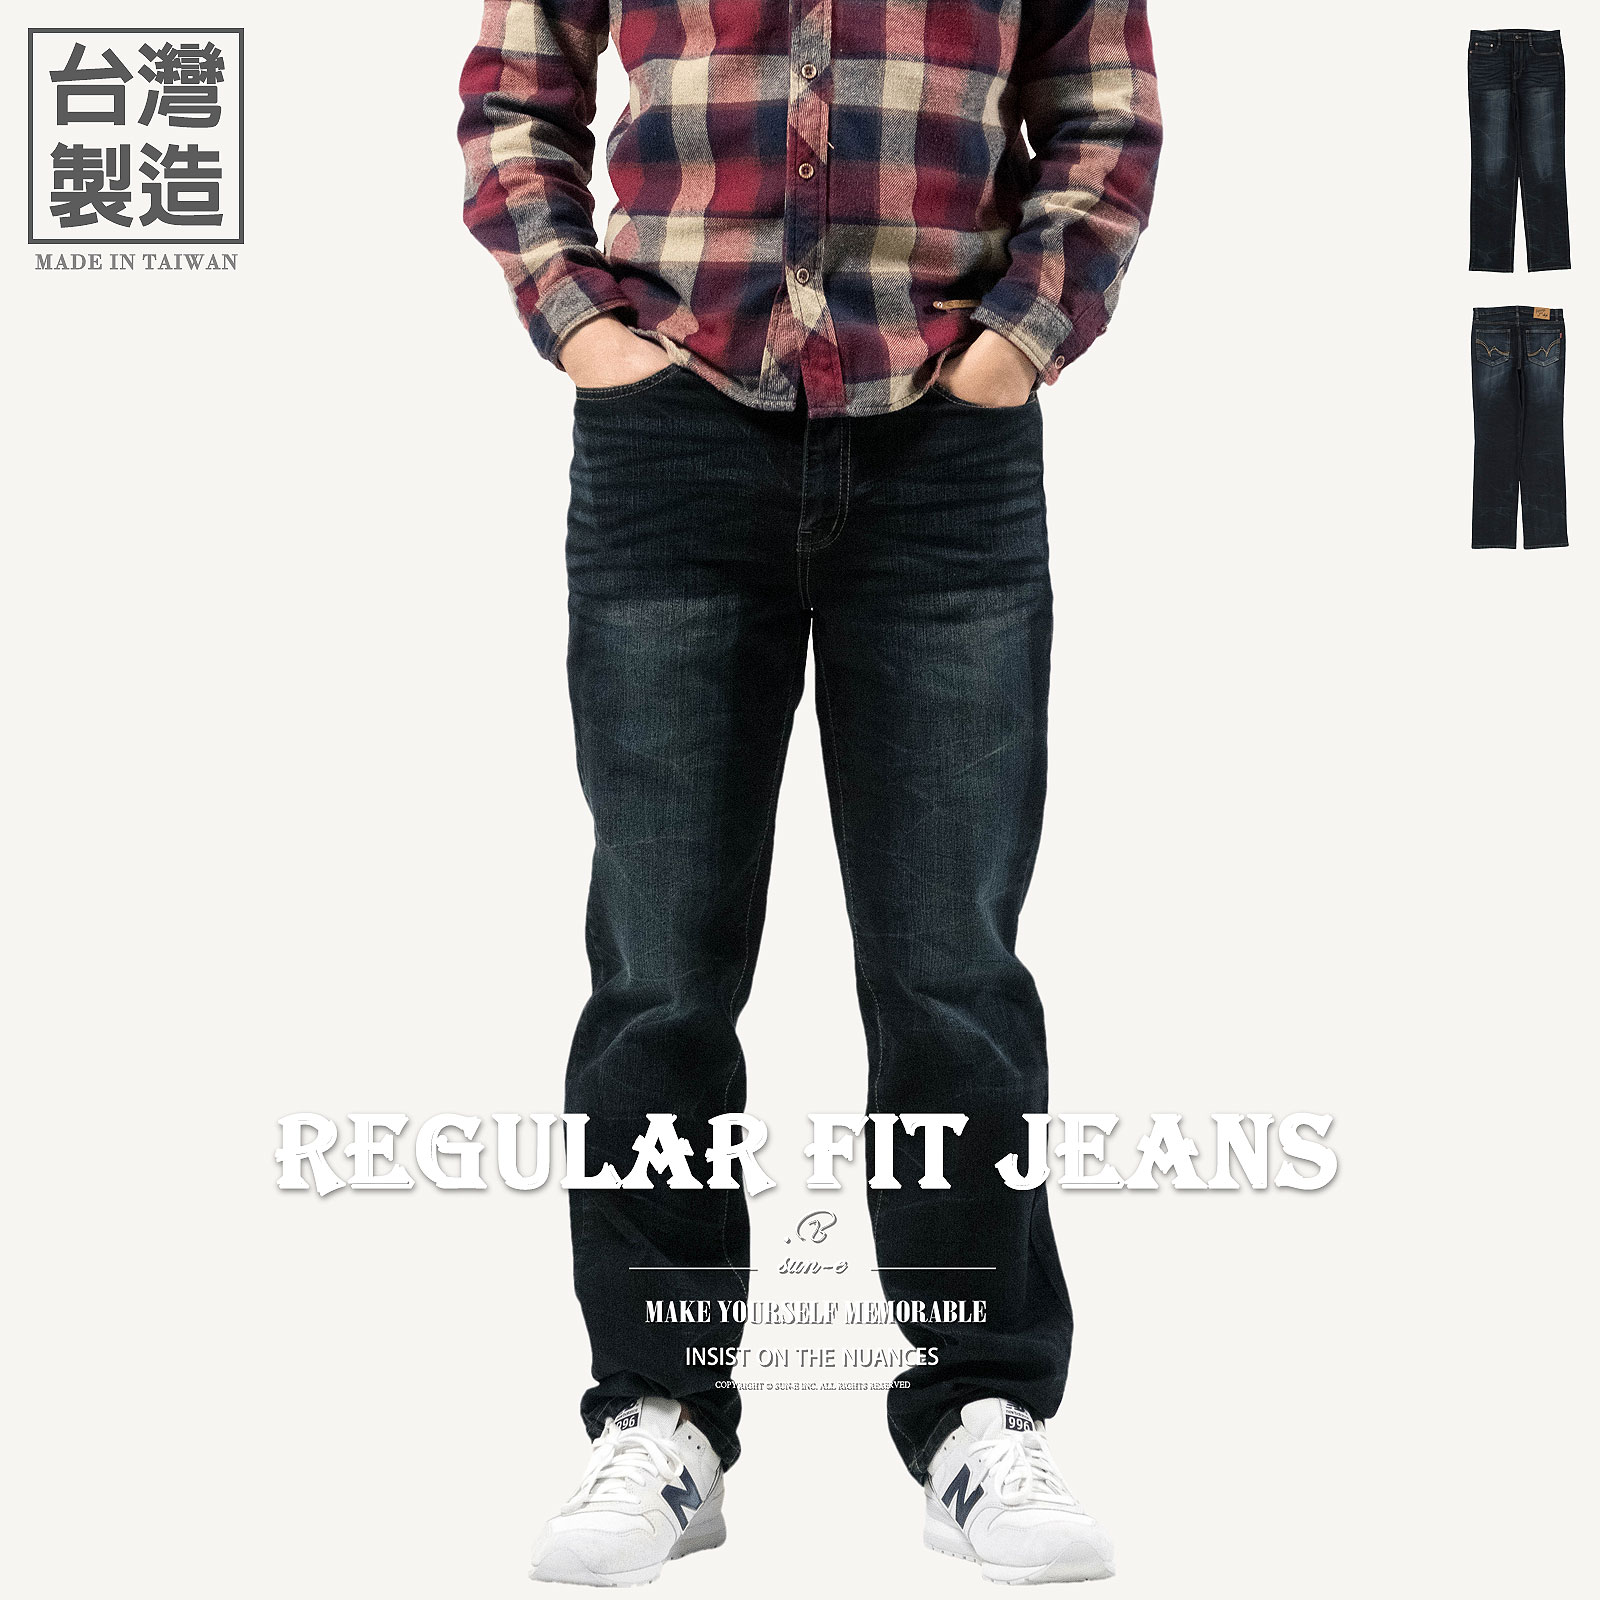 台灣製牛仔褲 中直筒牛仔長褲 刷紋彈性丹寧長褲 刷色直筒褲 刷白牛仔褲 YKK拉鍊 車繡後口袋 百貨公司等級 Made In Taiwan Jeans Regular Fit Jeans Denim Pants Stretch Jeans Embroidered Pockets (345-5918-21)深牛仔 腰圍:28~39英吋 (71~99公分) 男 [實體店面保障] sun-e